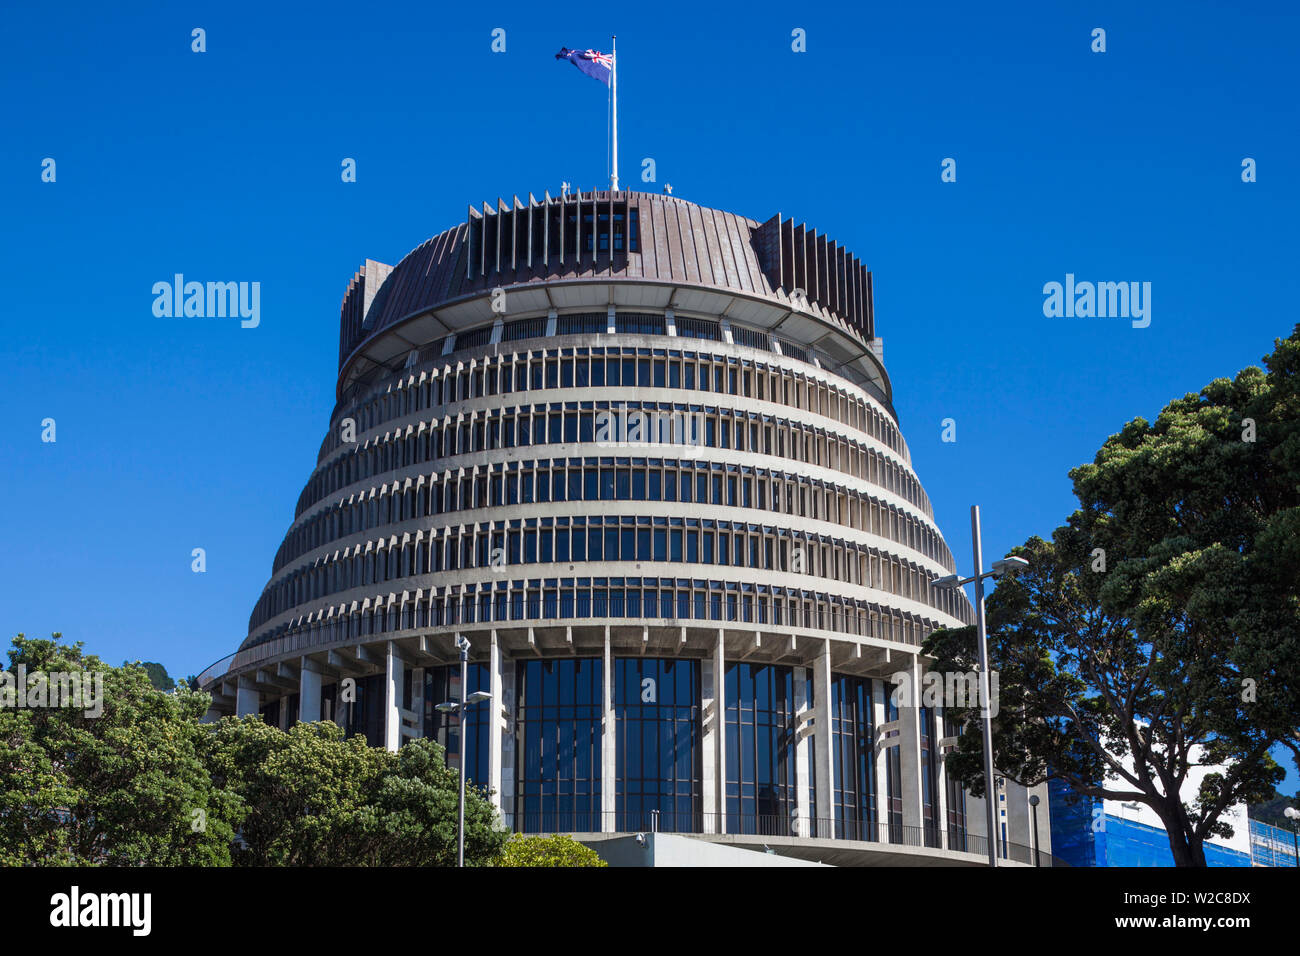 Nouvelle Zélande, île du Nord, Wellington, la ruche, l'aile de l'exécutif, le Parlement néo-zélandais Banque D'Images